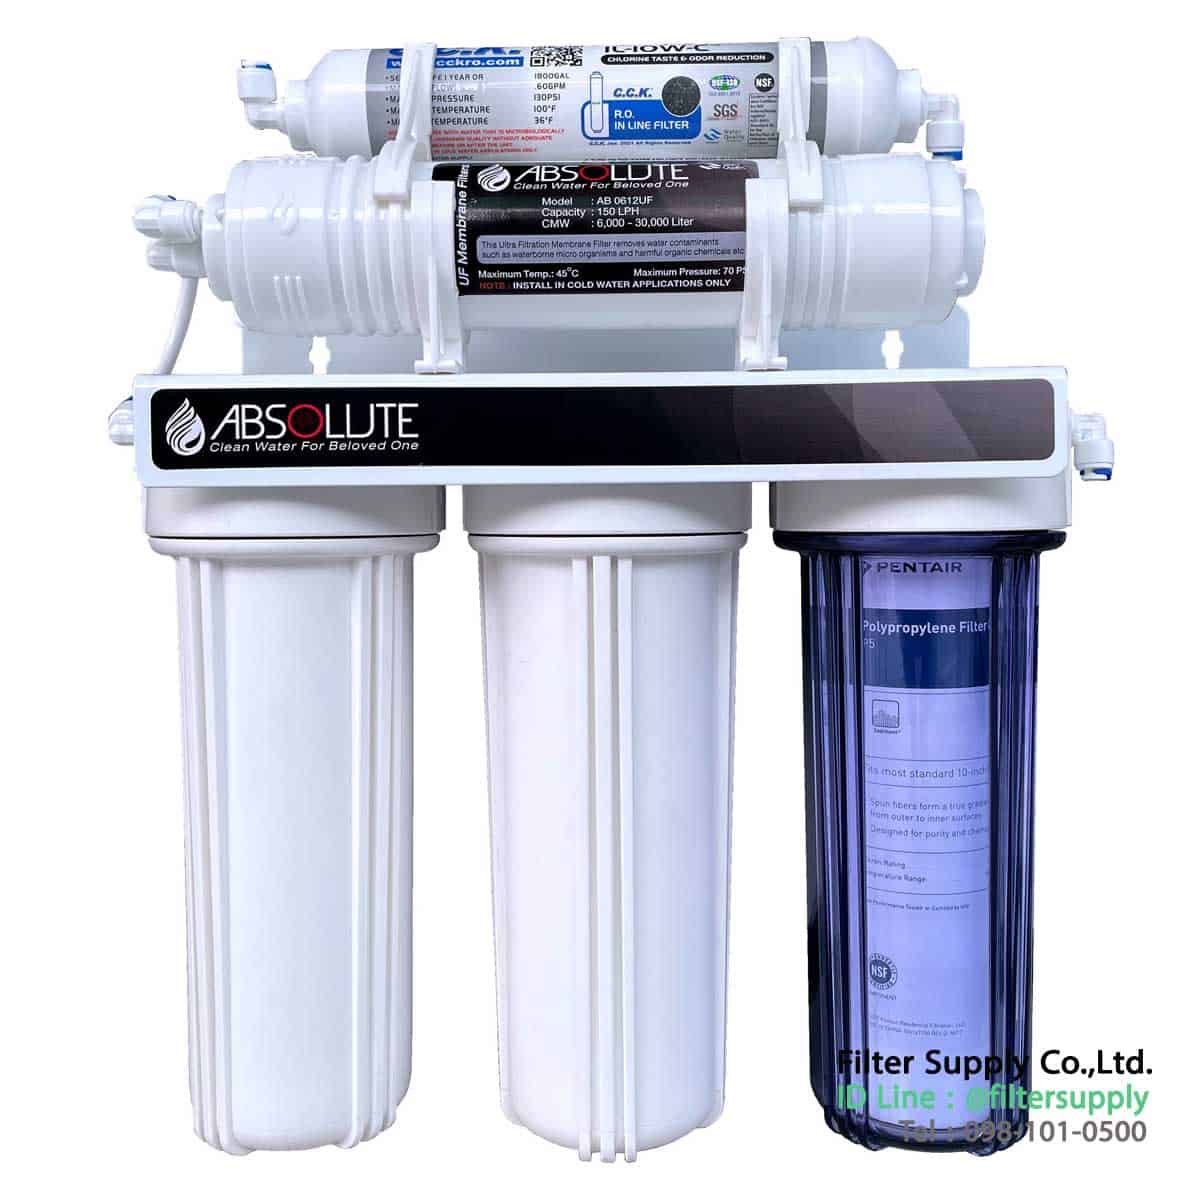 เครื่องกรองน้ำ Absolute UF รุ่น AB05UFS ระบบกรอง 5 ขั้นตอน Ultra Filtration